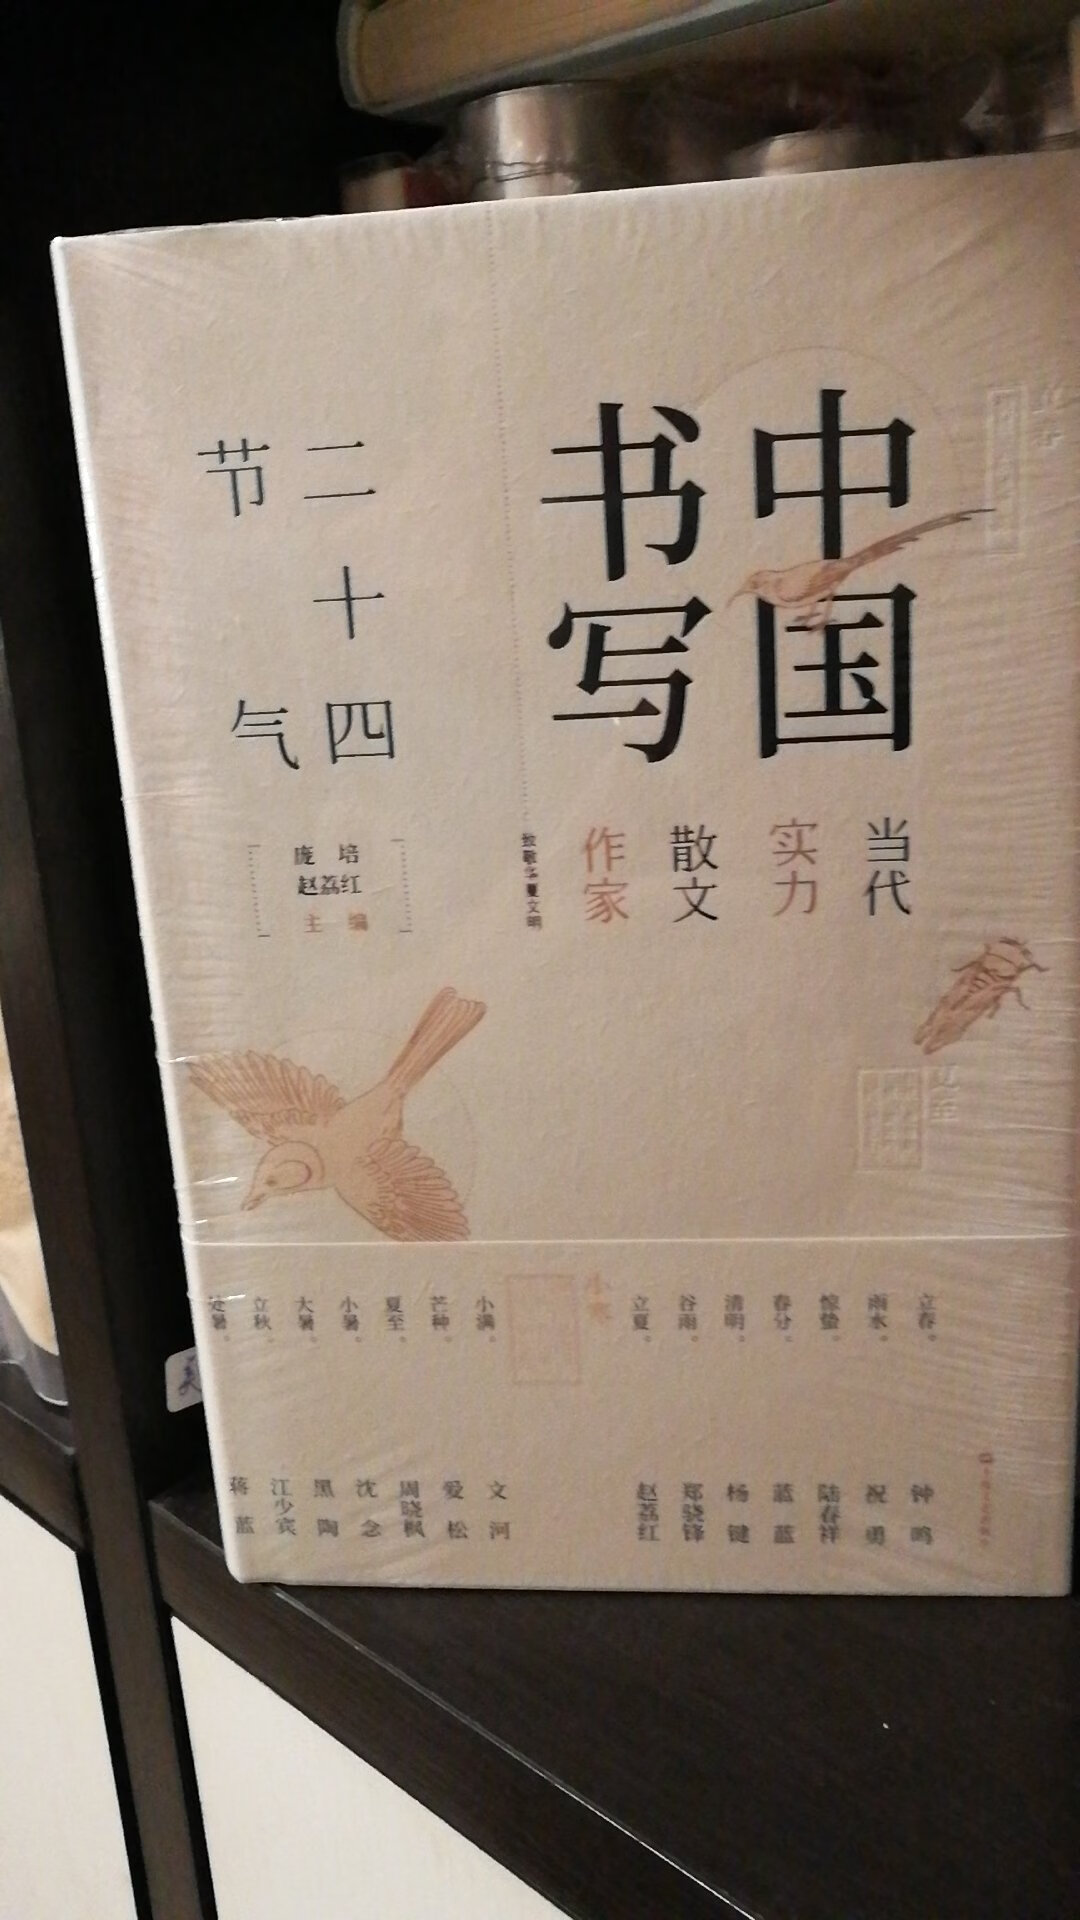 赶上双11图书优惠，购买了这本书。我喜欢中国文化里的节气。这本书是邀请了一些散文家。很值得珍藏的一本书。